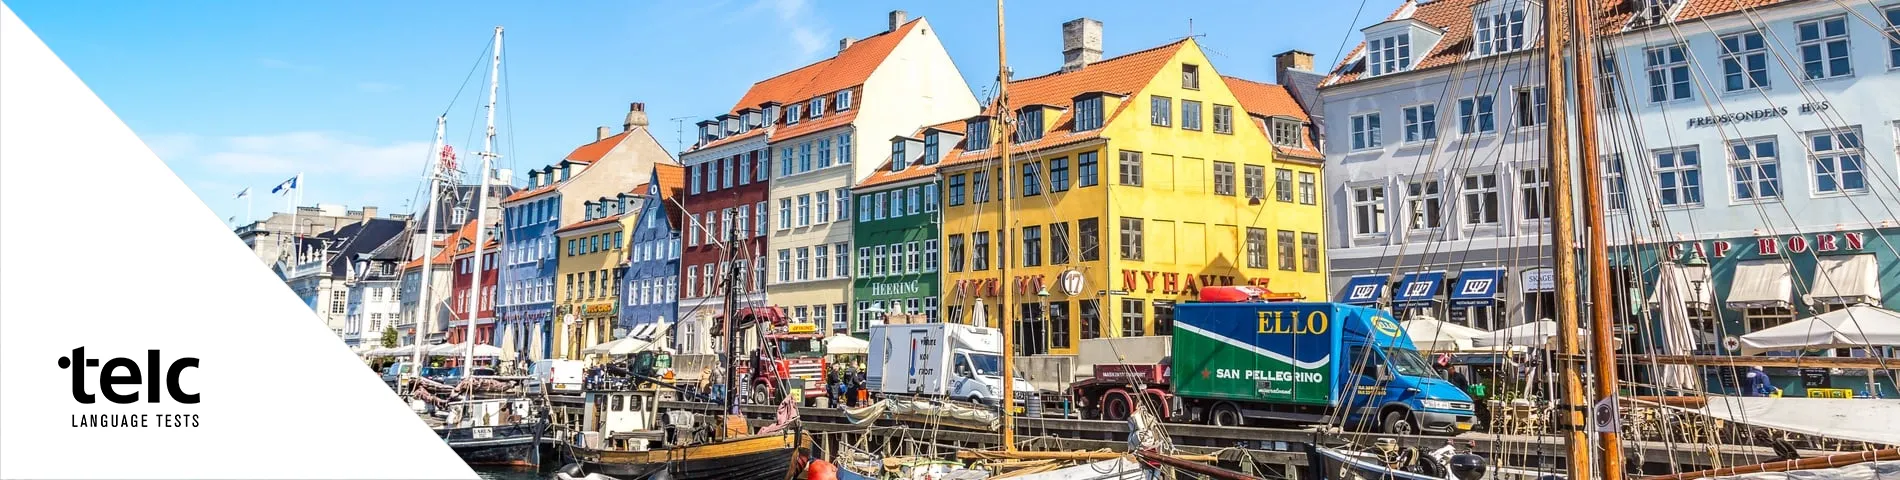 哥本哈根 - 欧洲语言证书（TELC）